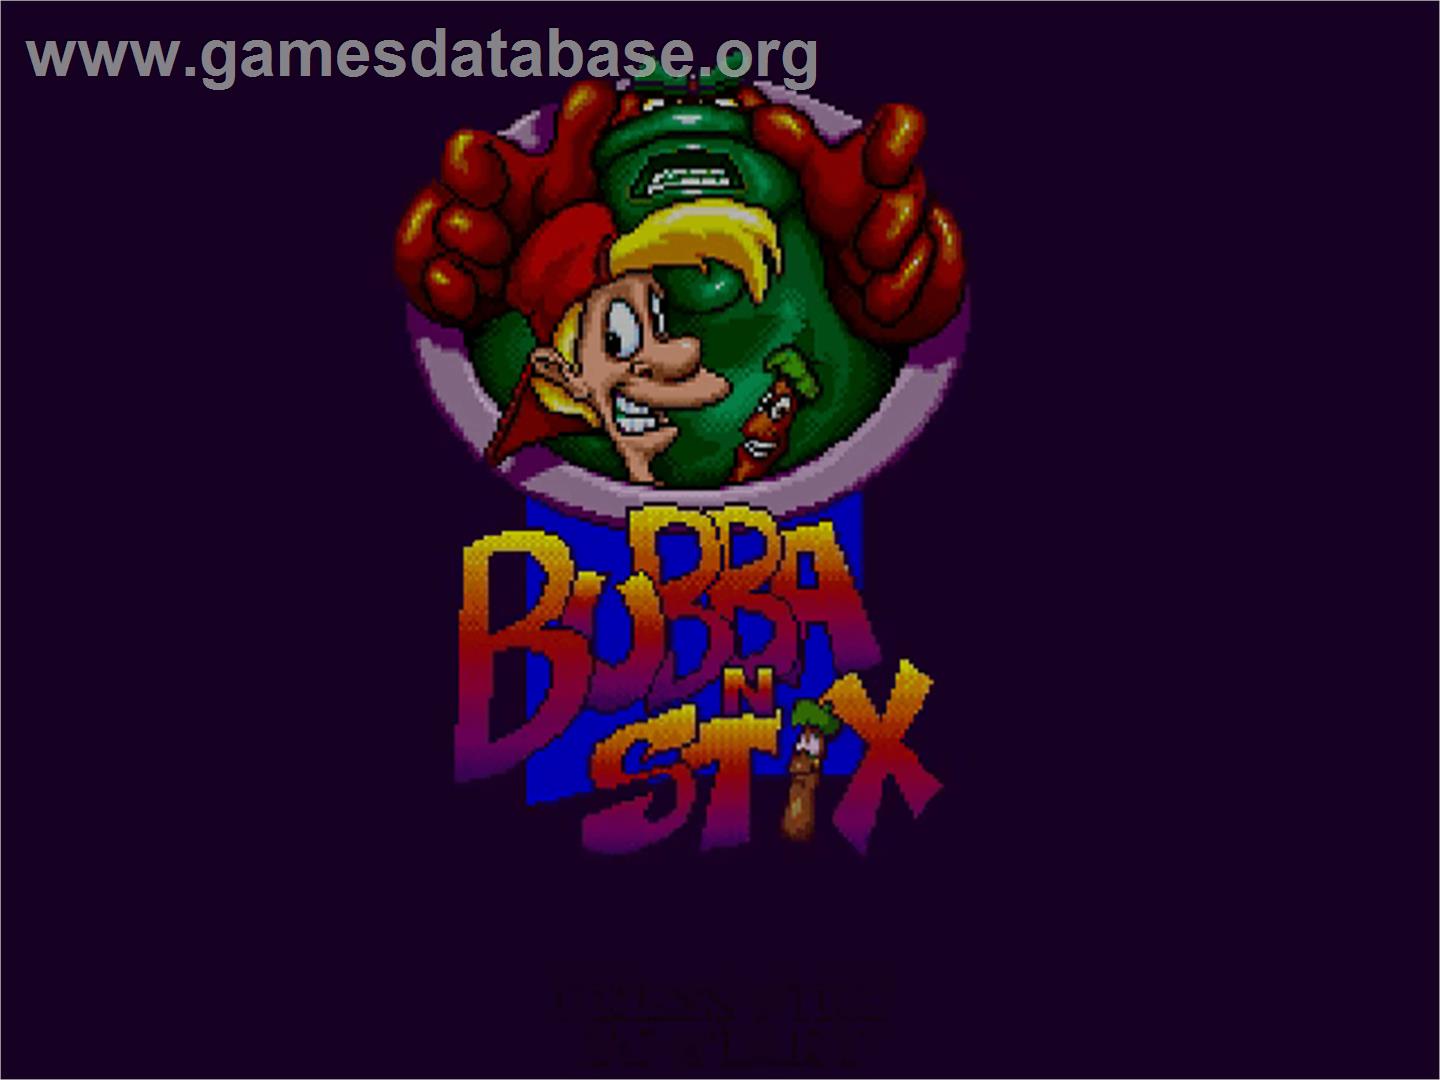 Bubba 'n' Stix - Commodore Amiga CD32 - Artwork - Title Screen